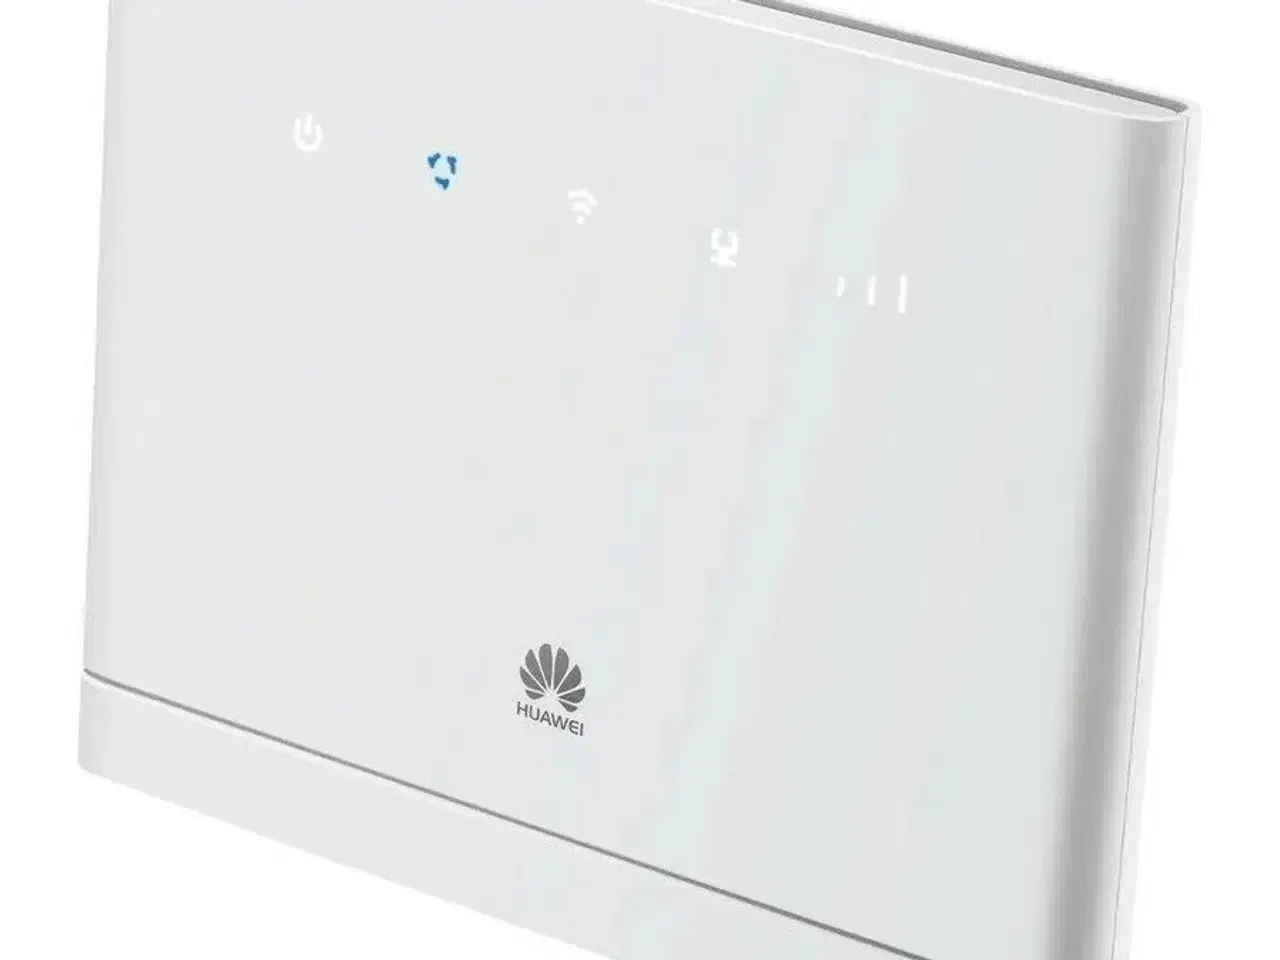 Billede 2 - Huawei B315s-22 4G-router sælges billigt